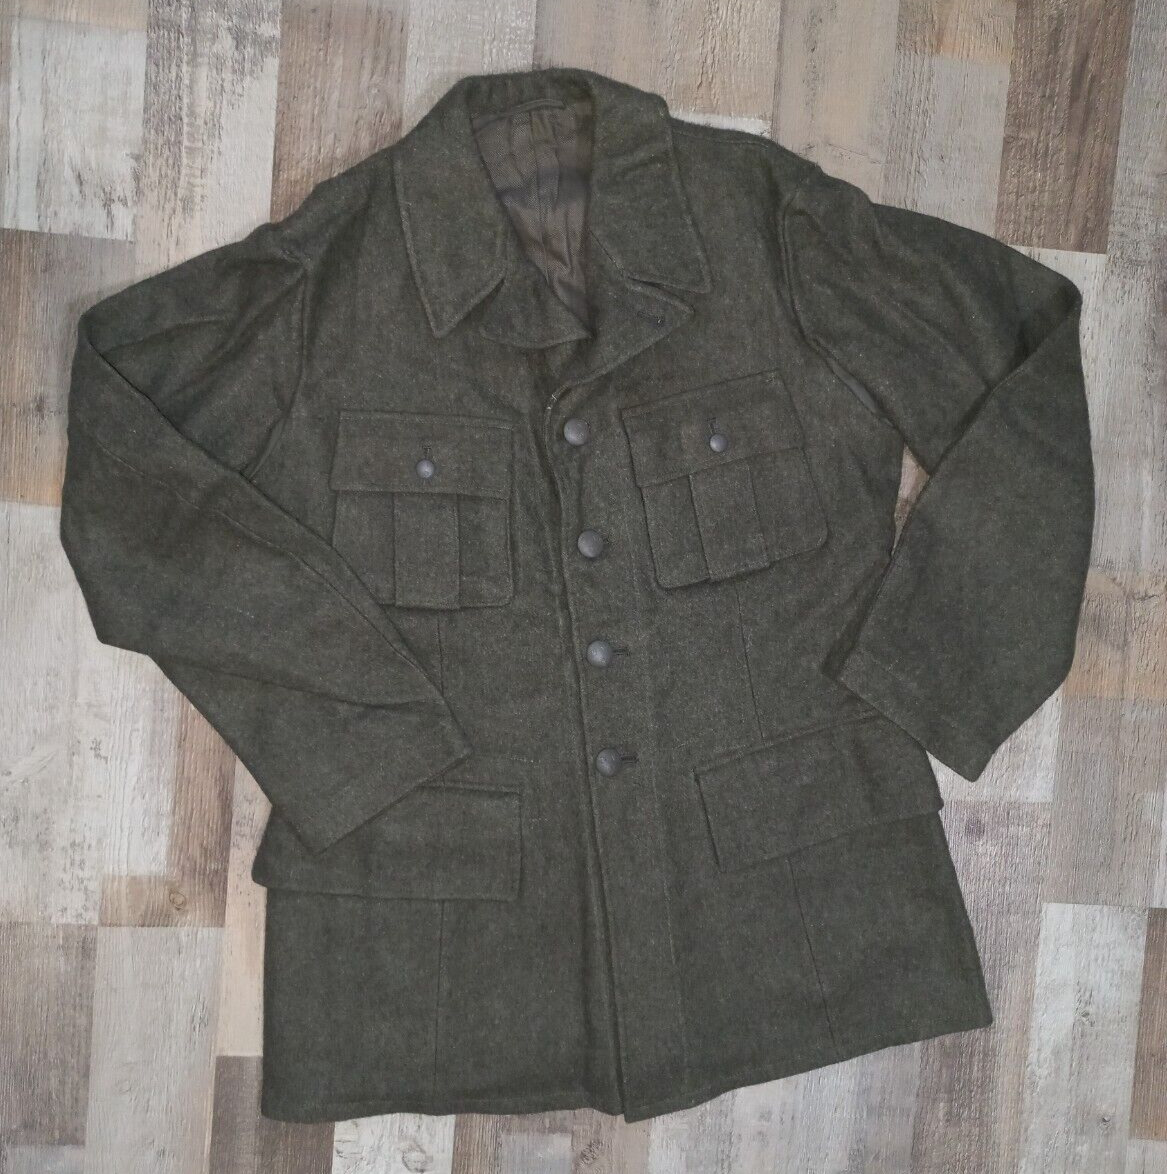 1944 World War 2 Sweden Military Wool Jacket WW2 Mint/Unworn Size S